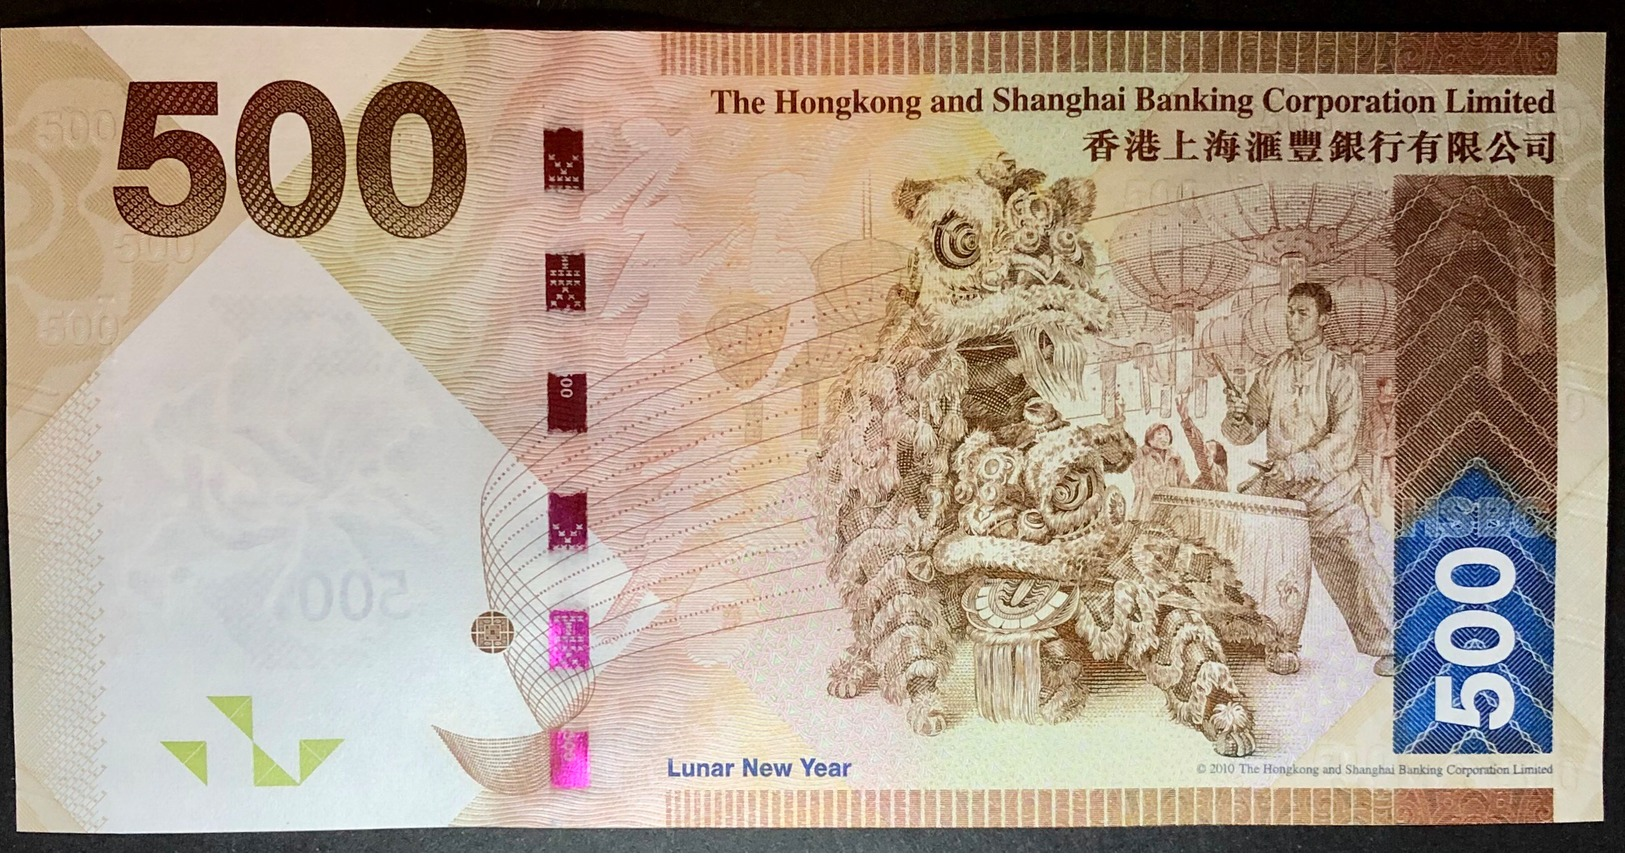 2016 Hong Kong Ang Shanghai Bank   Lunar New Year Edition 500 Dollars UNC  Lucky Number (TK 477777) - Hong Kong